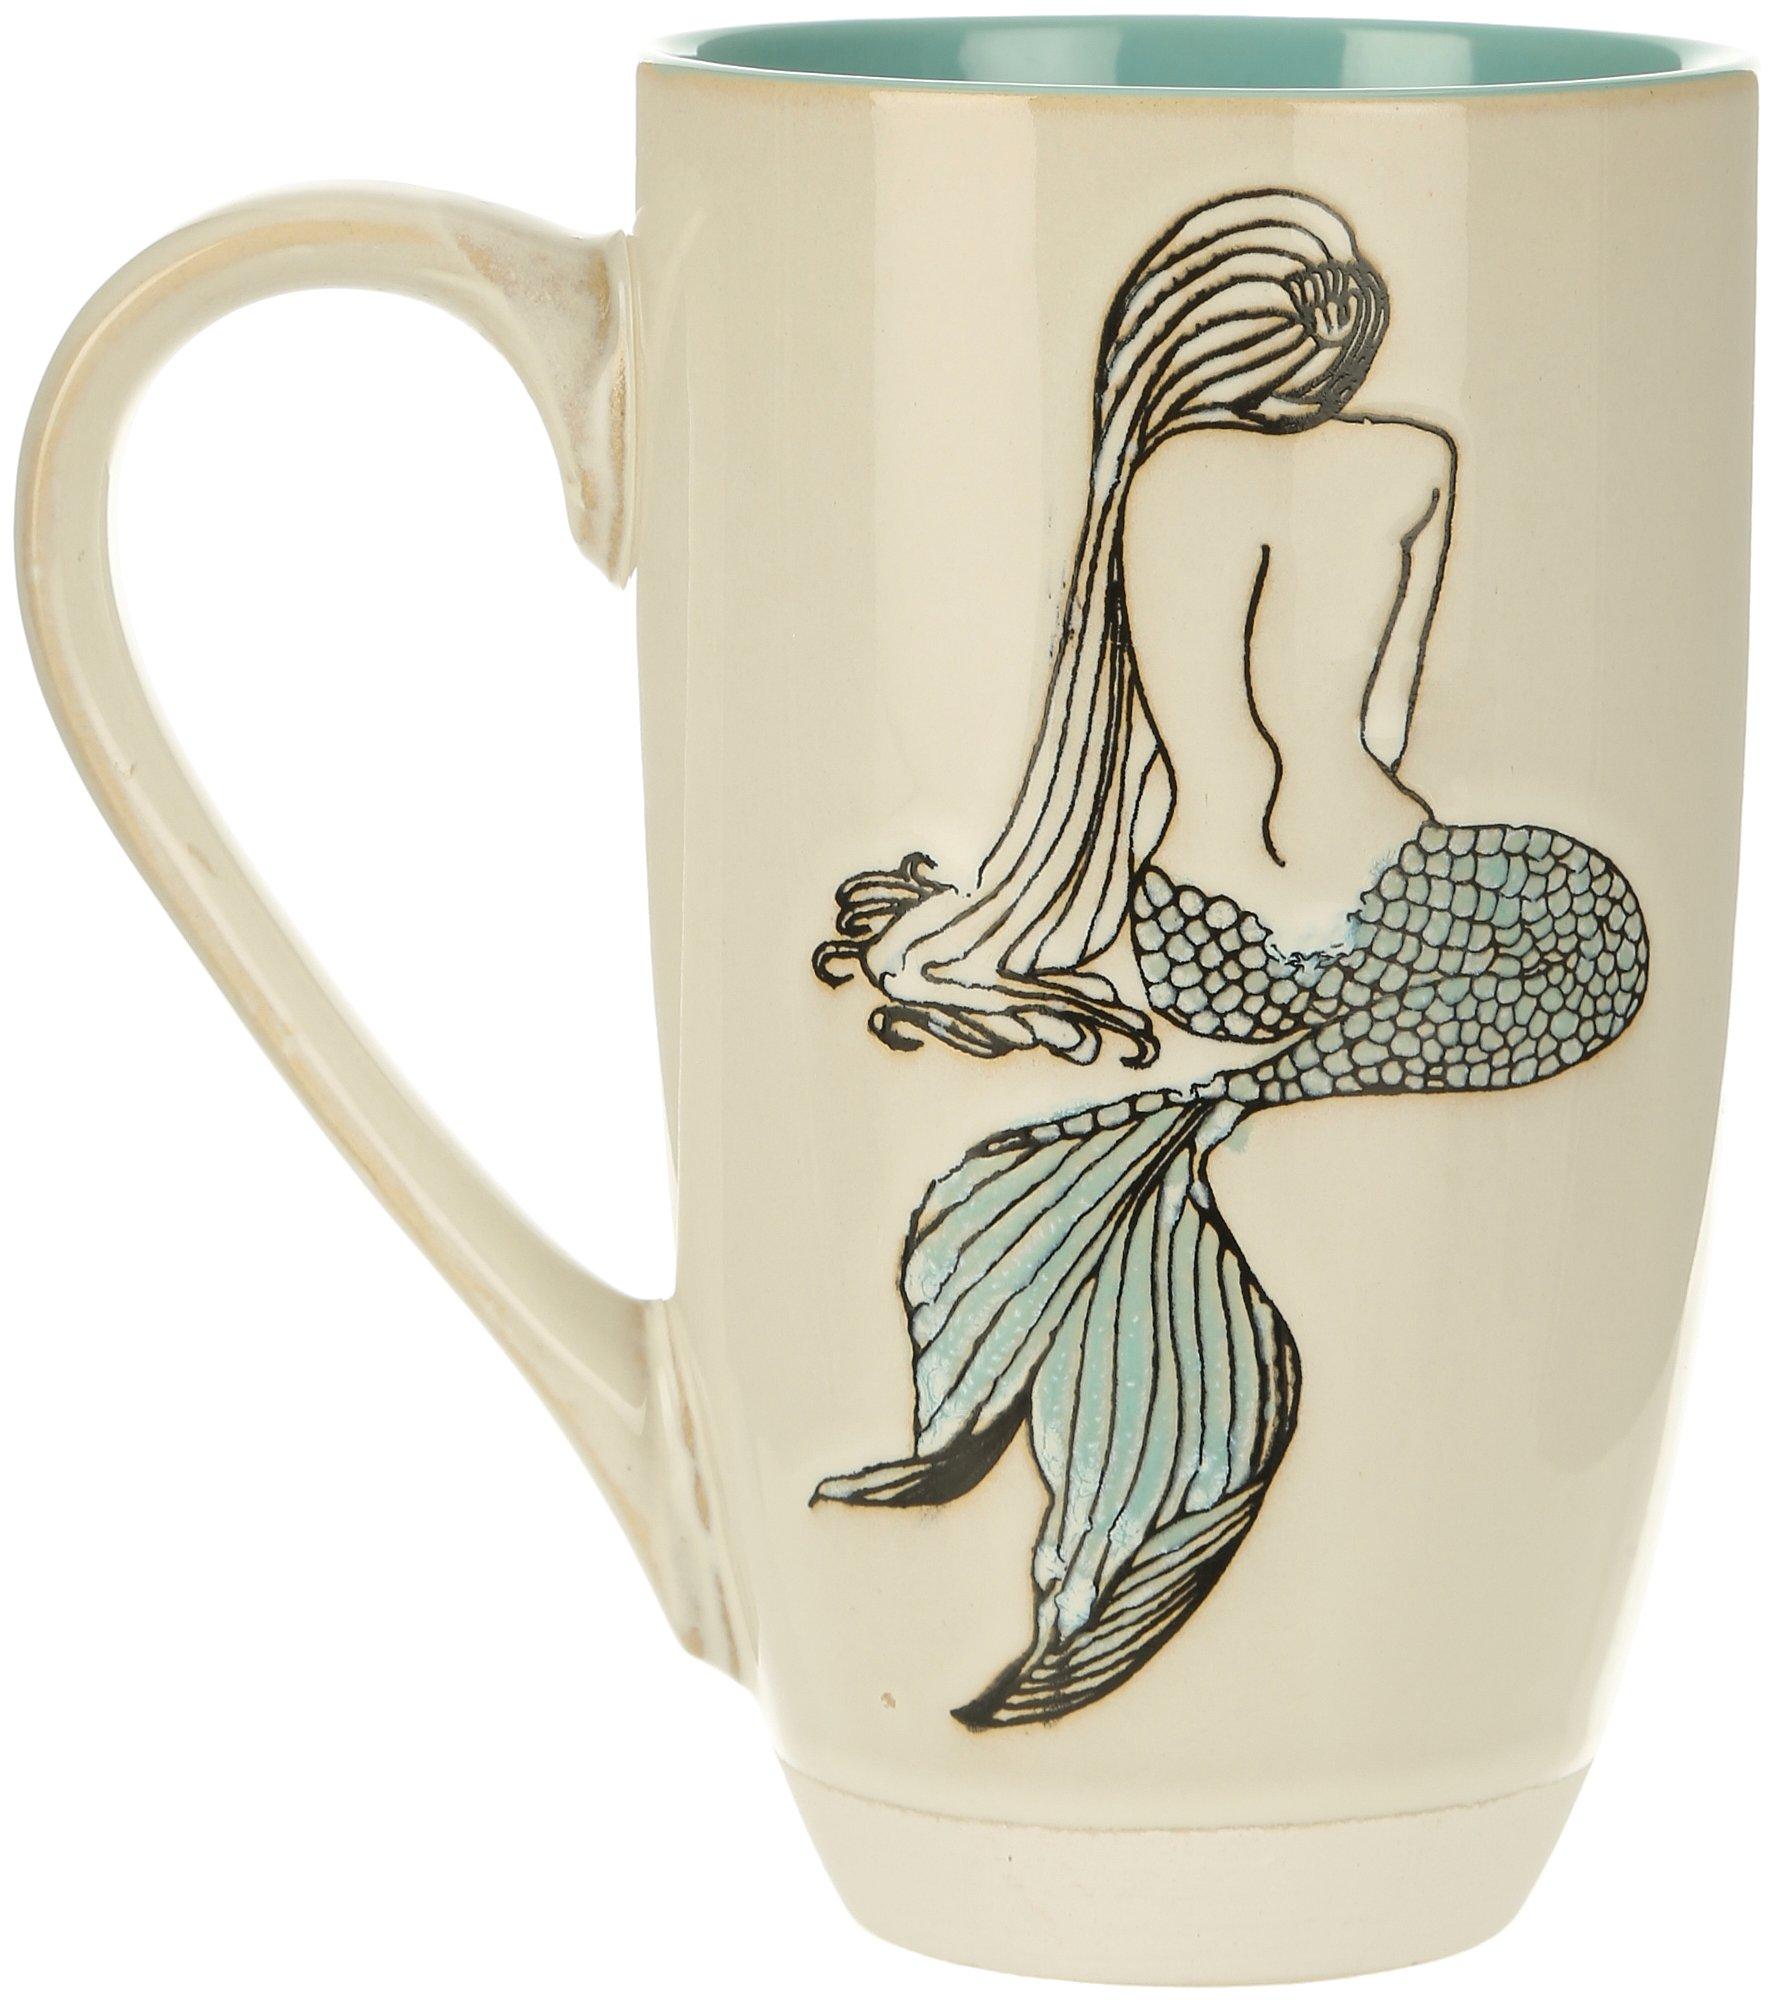 18oz Mermaid Mystery Ceramic Mug